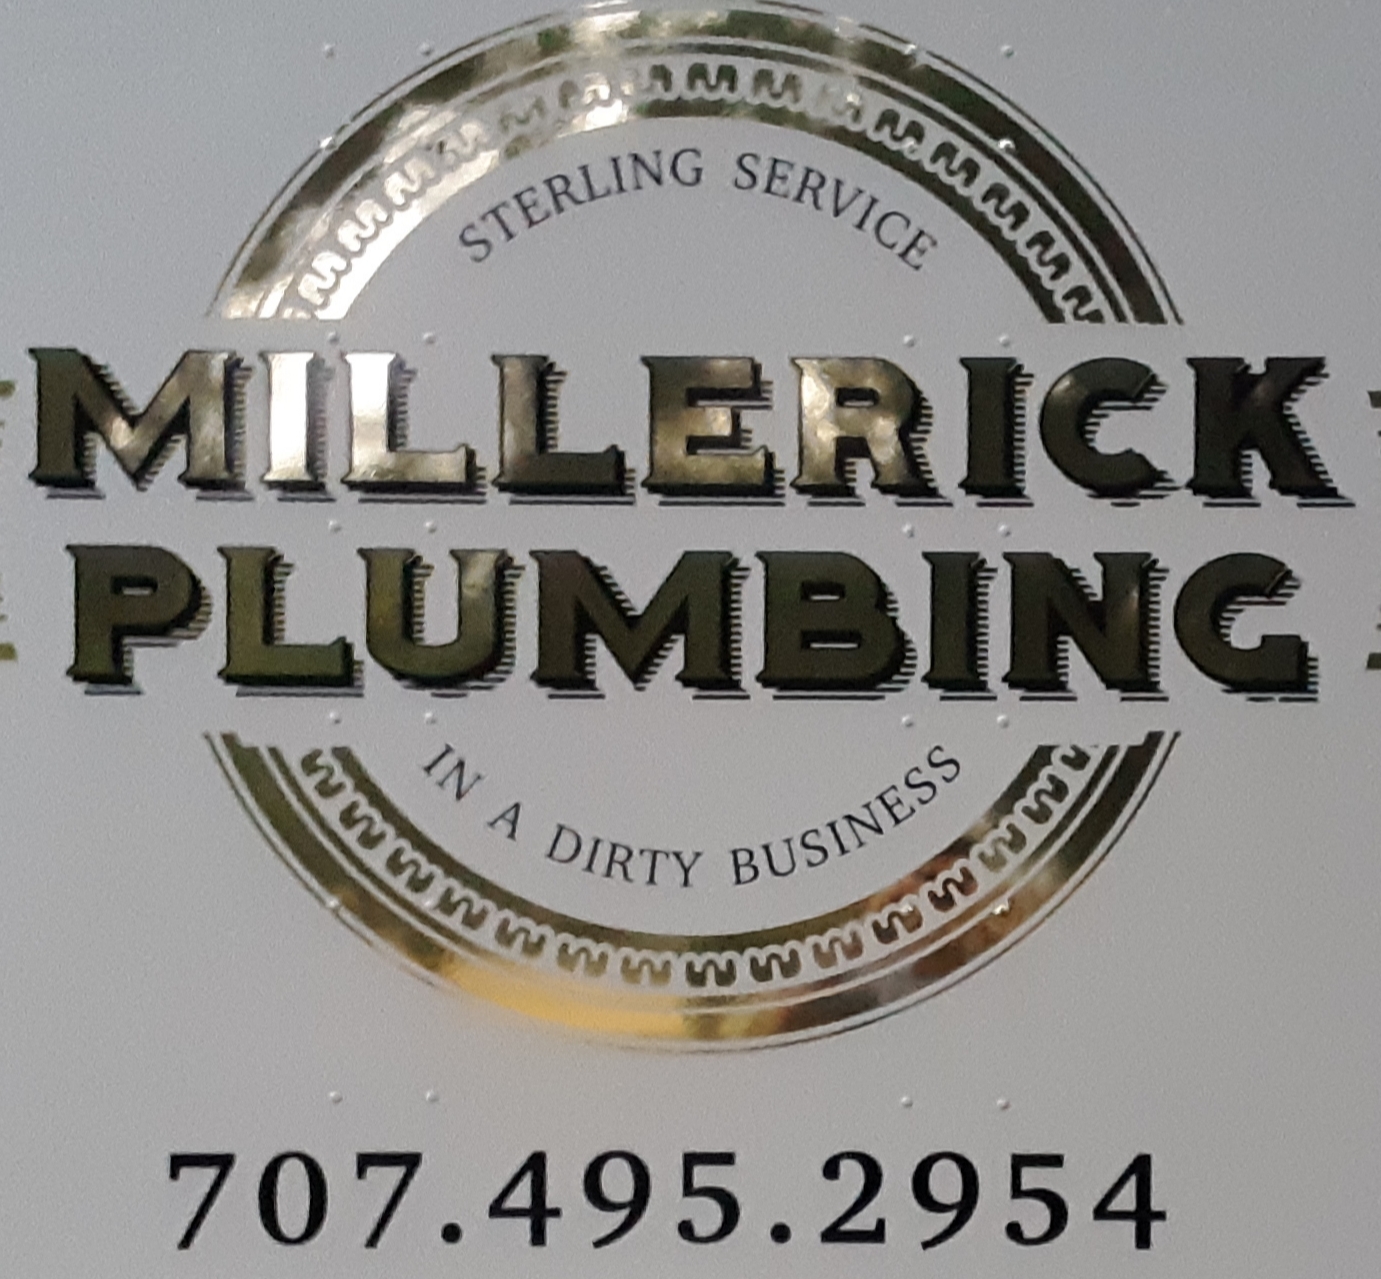 Millerick Plumbing